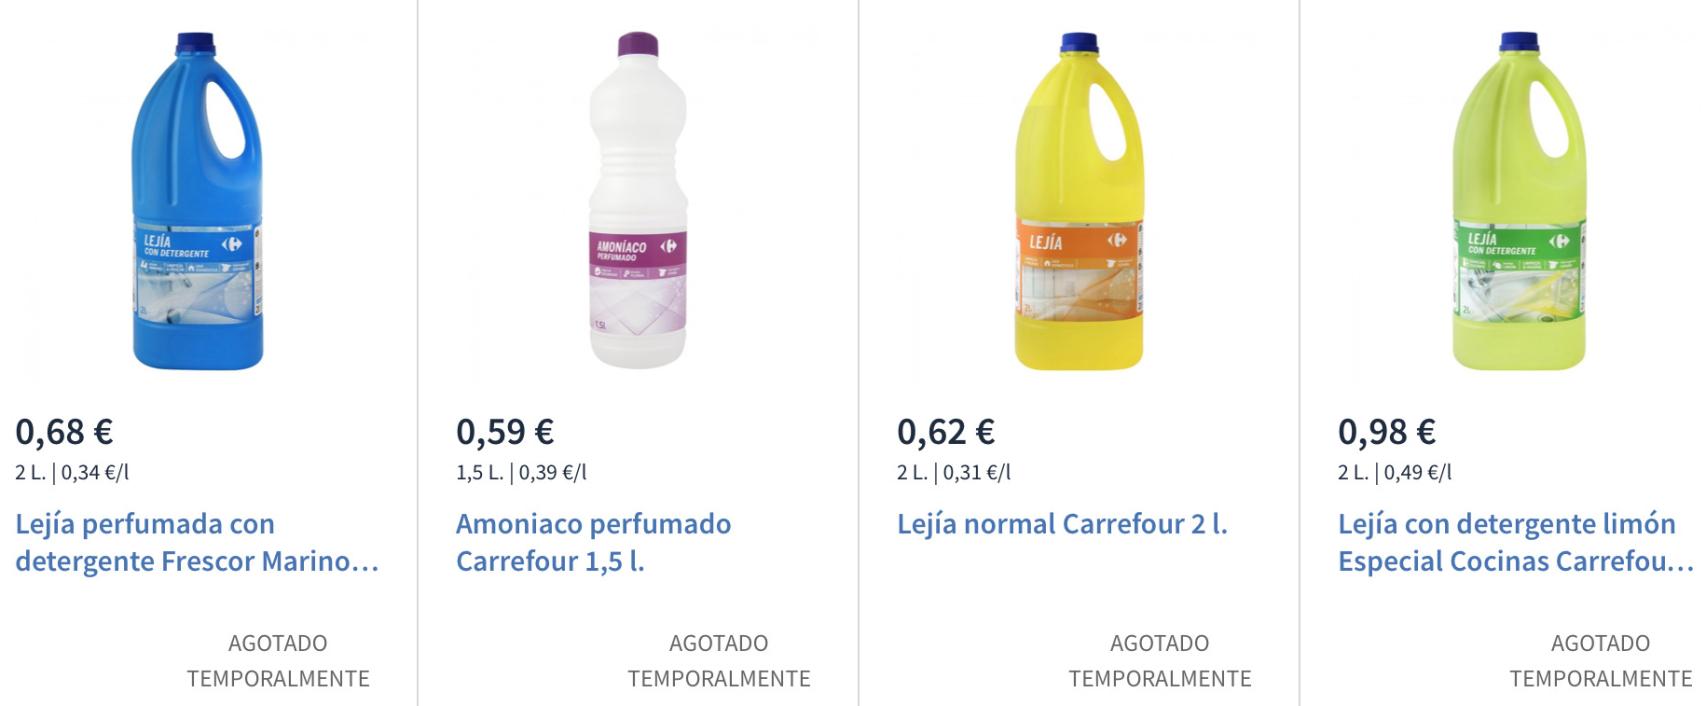 Lejía con detergente limón Dia garrafa 2 l - Supermercados DIA